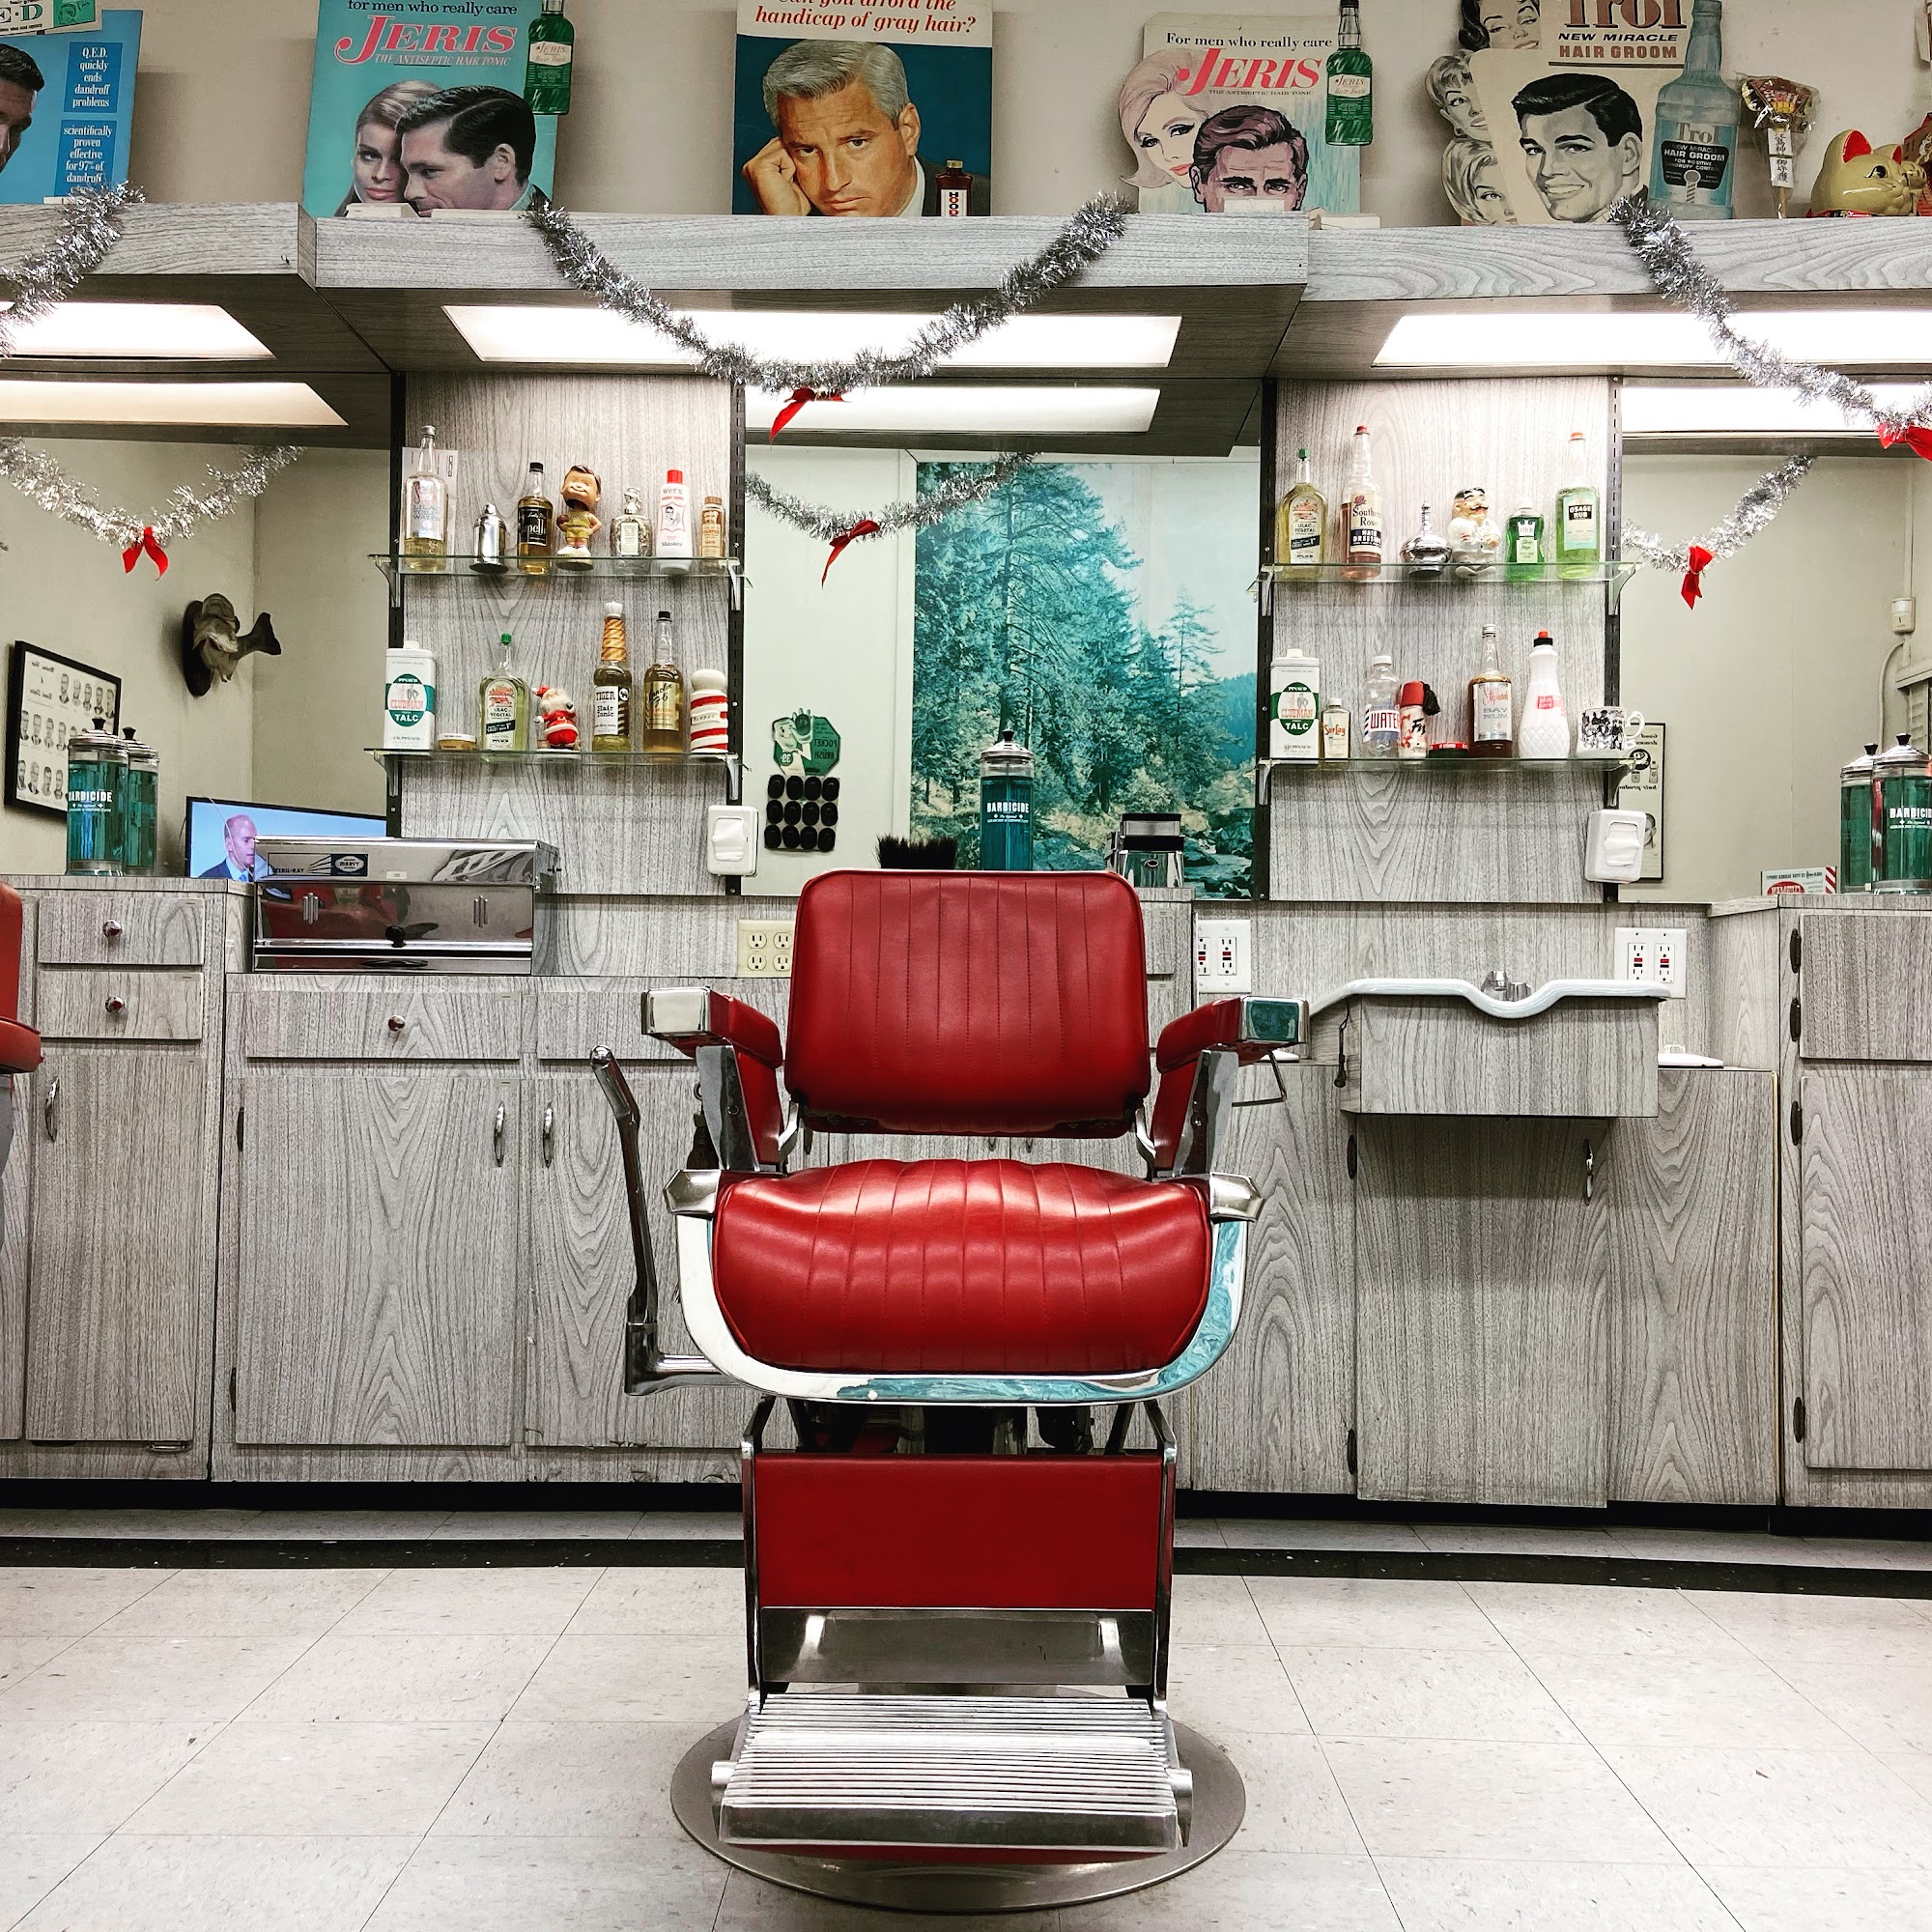 Fred's Barber Shop